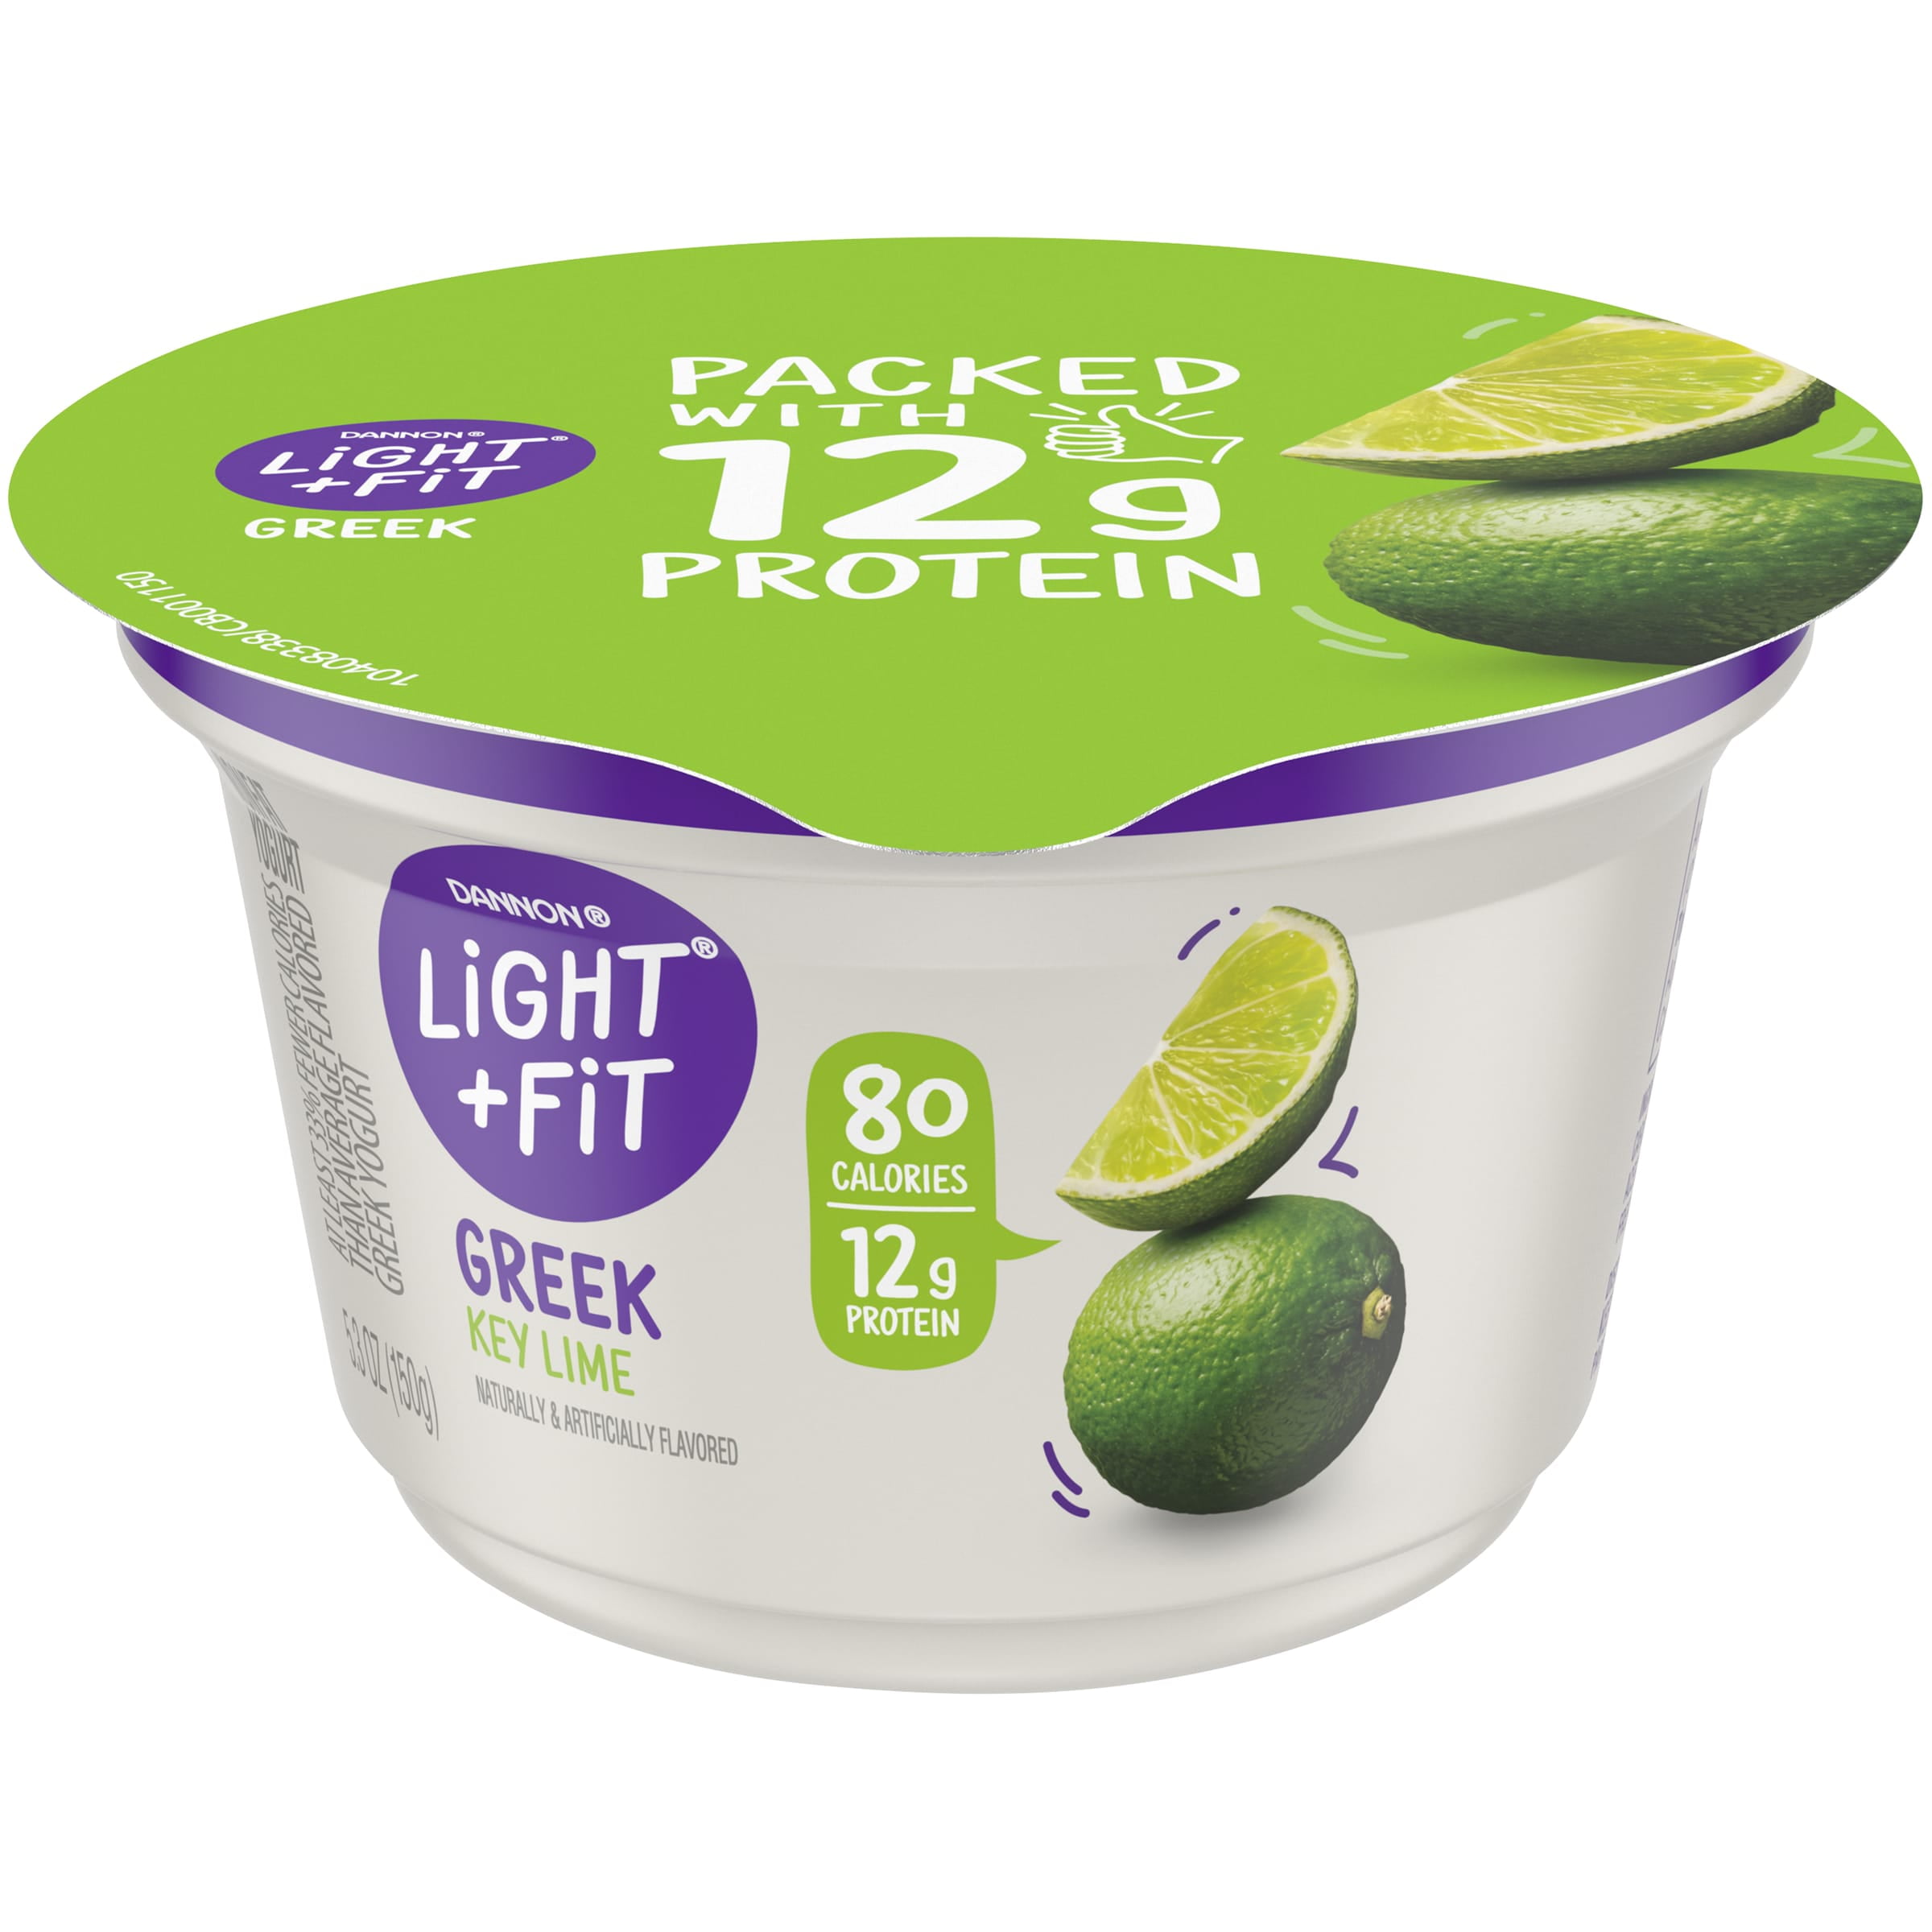 Light Fit Nonfat Key Greek Yogurt, 5.3 Oz. - Walmart.com